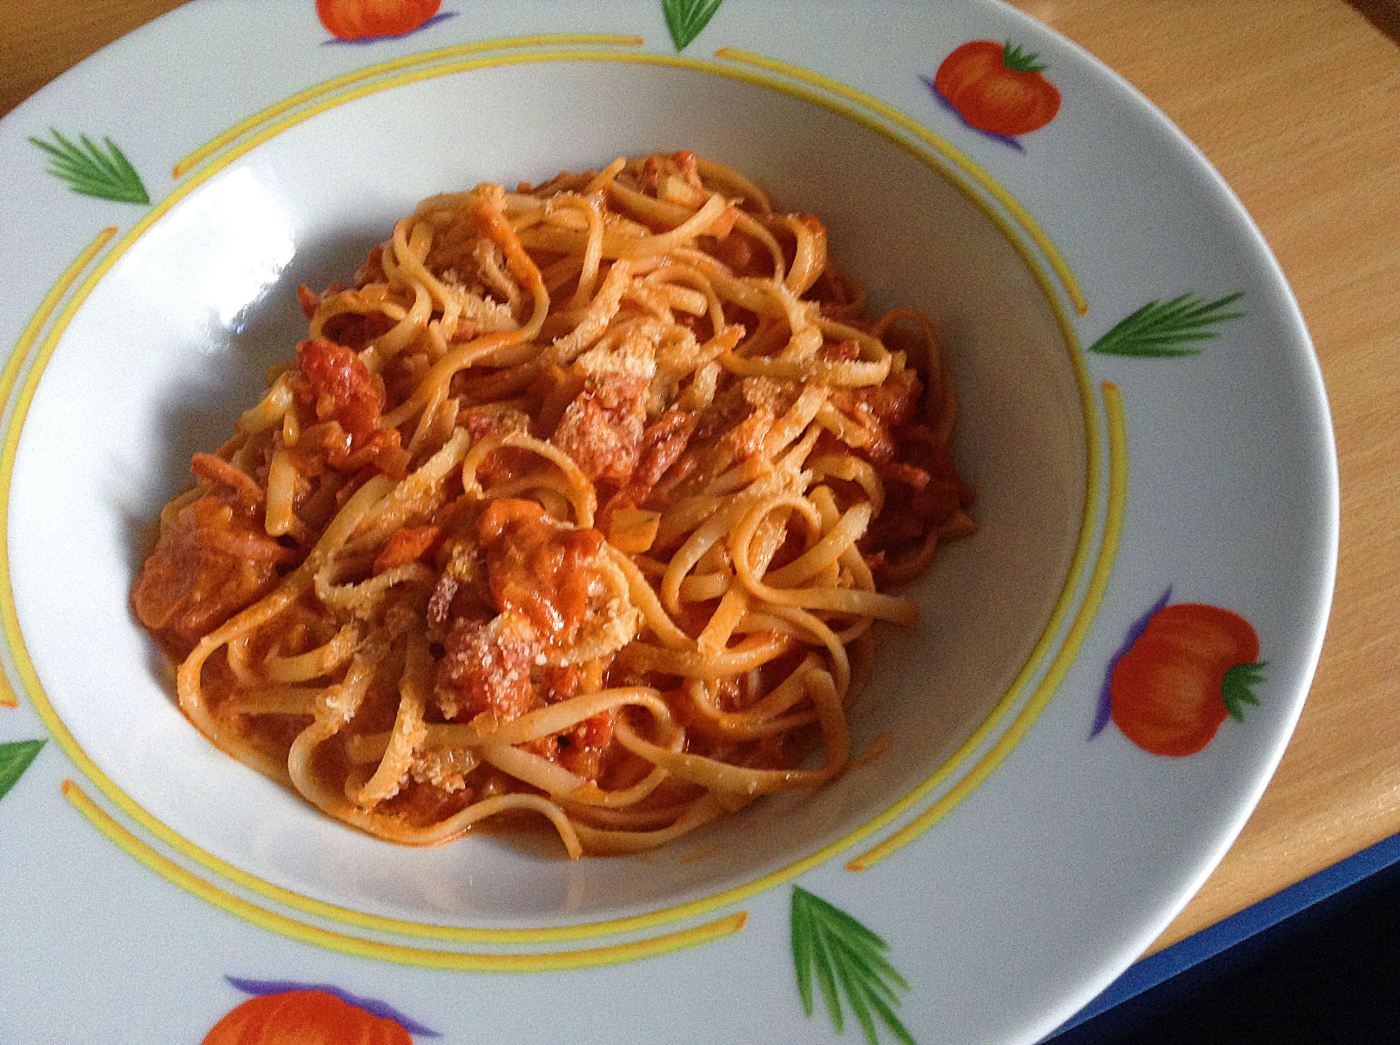 spaghetti-rezept